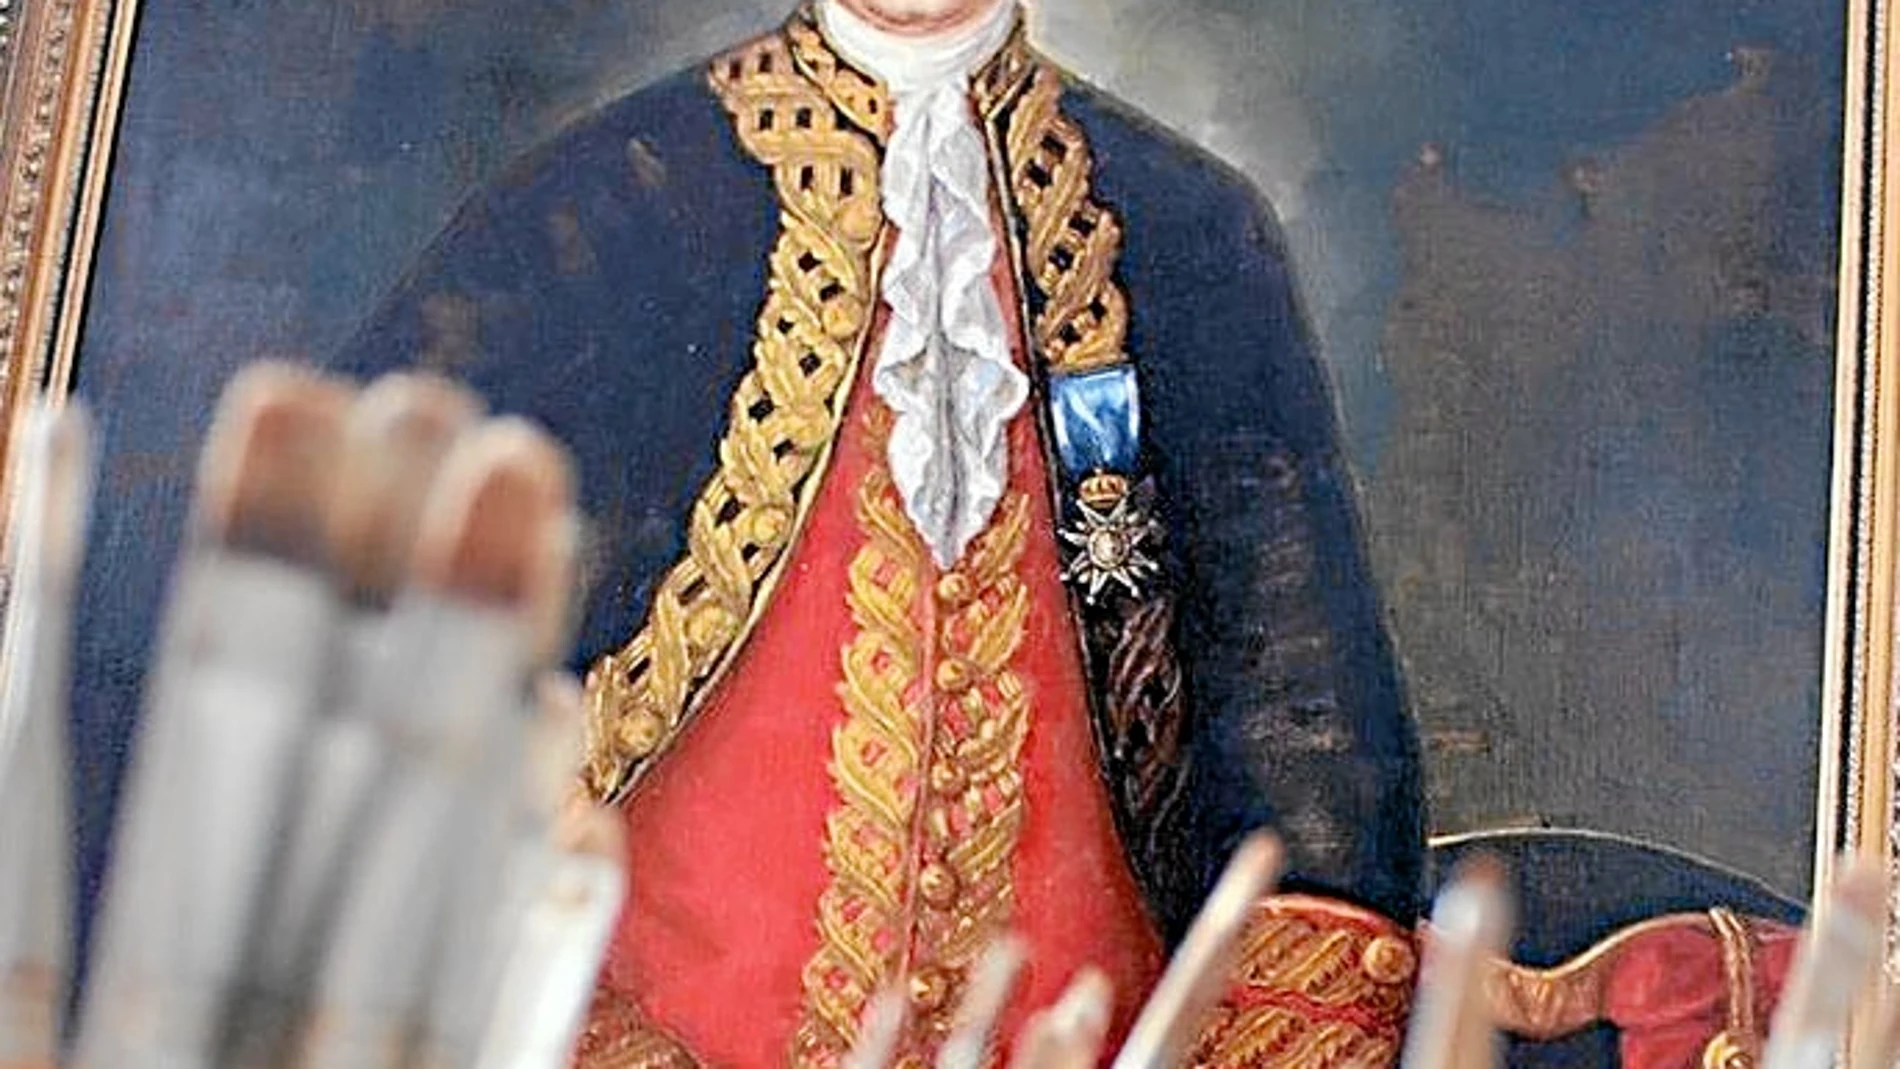 El retrato de Bernardo de Gálvez, que formará parte de los hombres ilustres de la historia de Estados Unidos